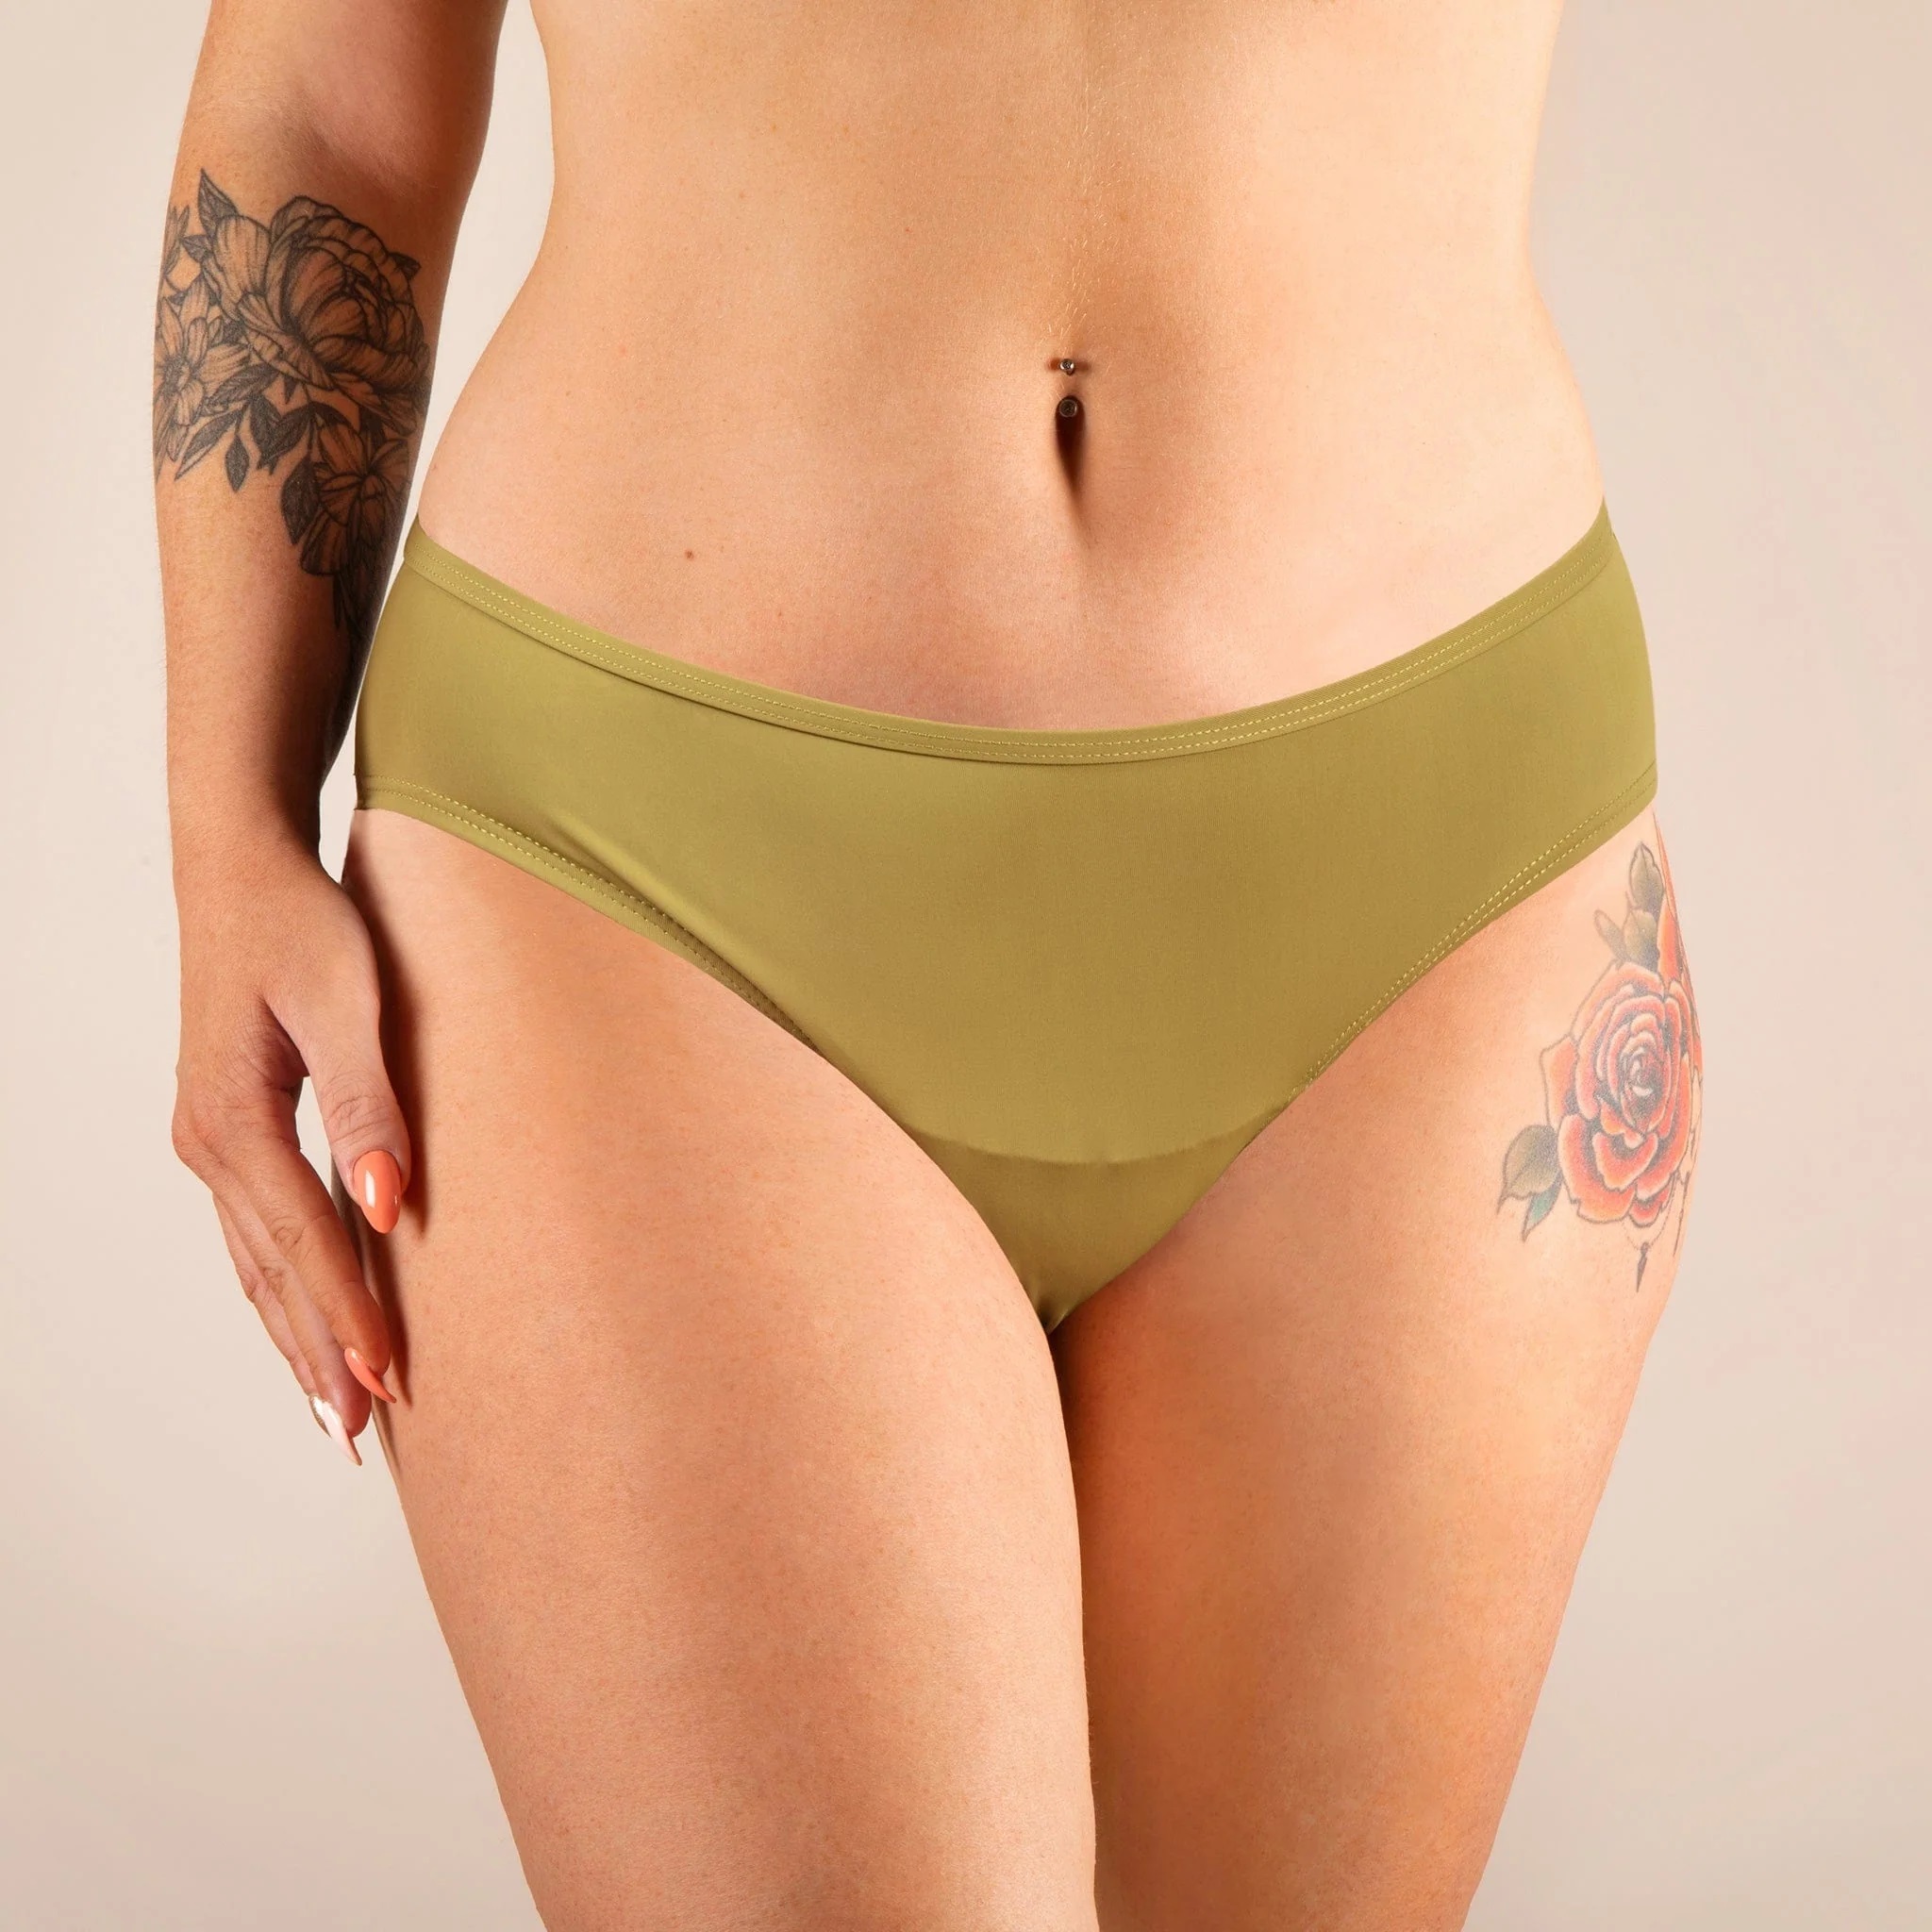 Bikinis menstruales para no perderse ni un día de playa este verano: verde de Señorita Braga.